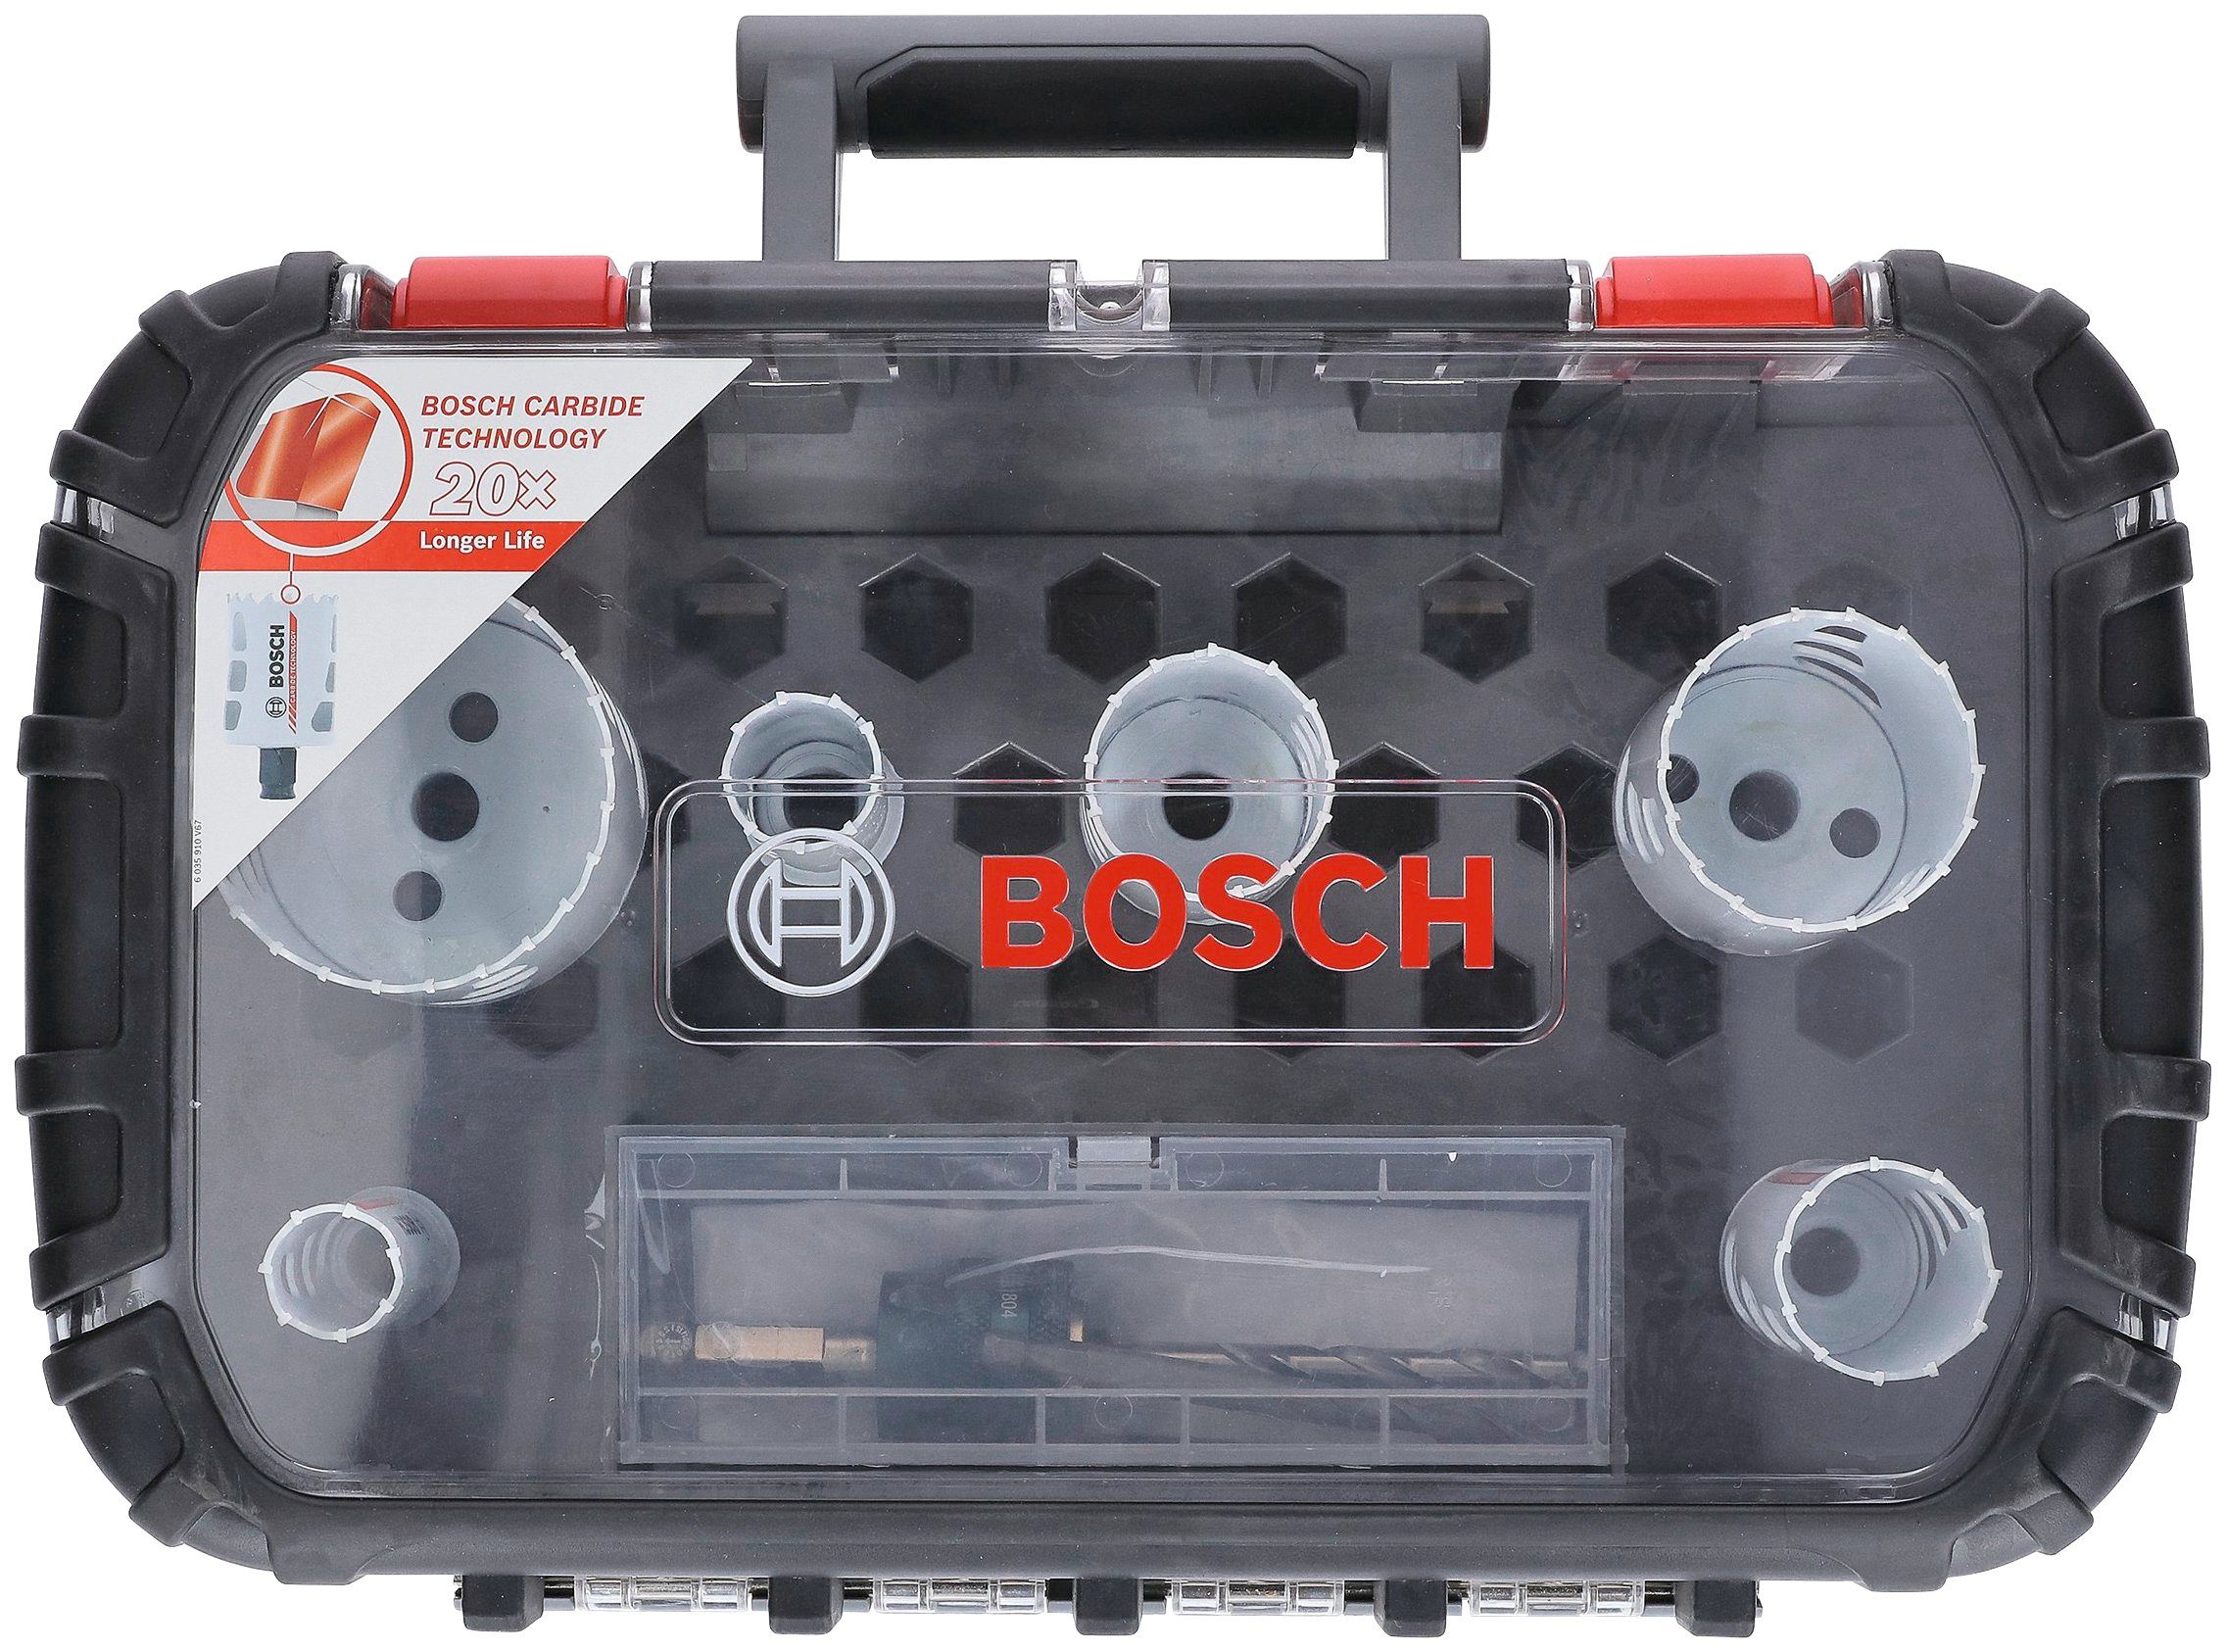 Lochsäge for Endurance Heavy Duty, Professional Carbide Bosch Lochsäge Set,